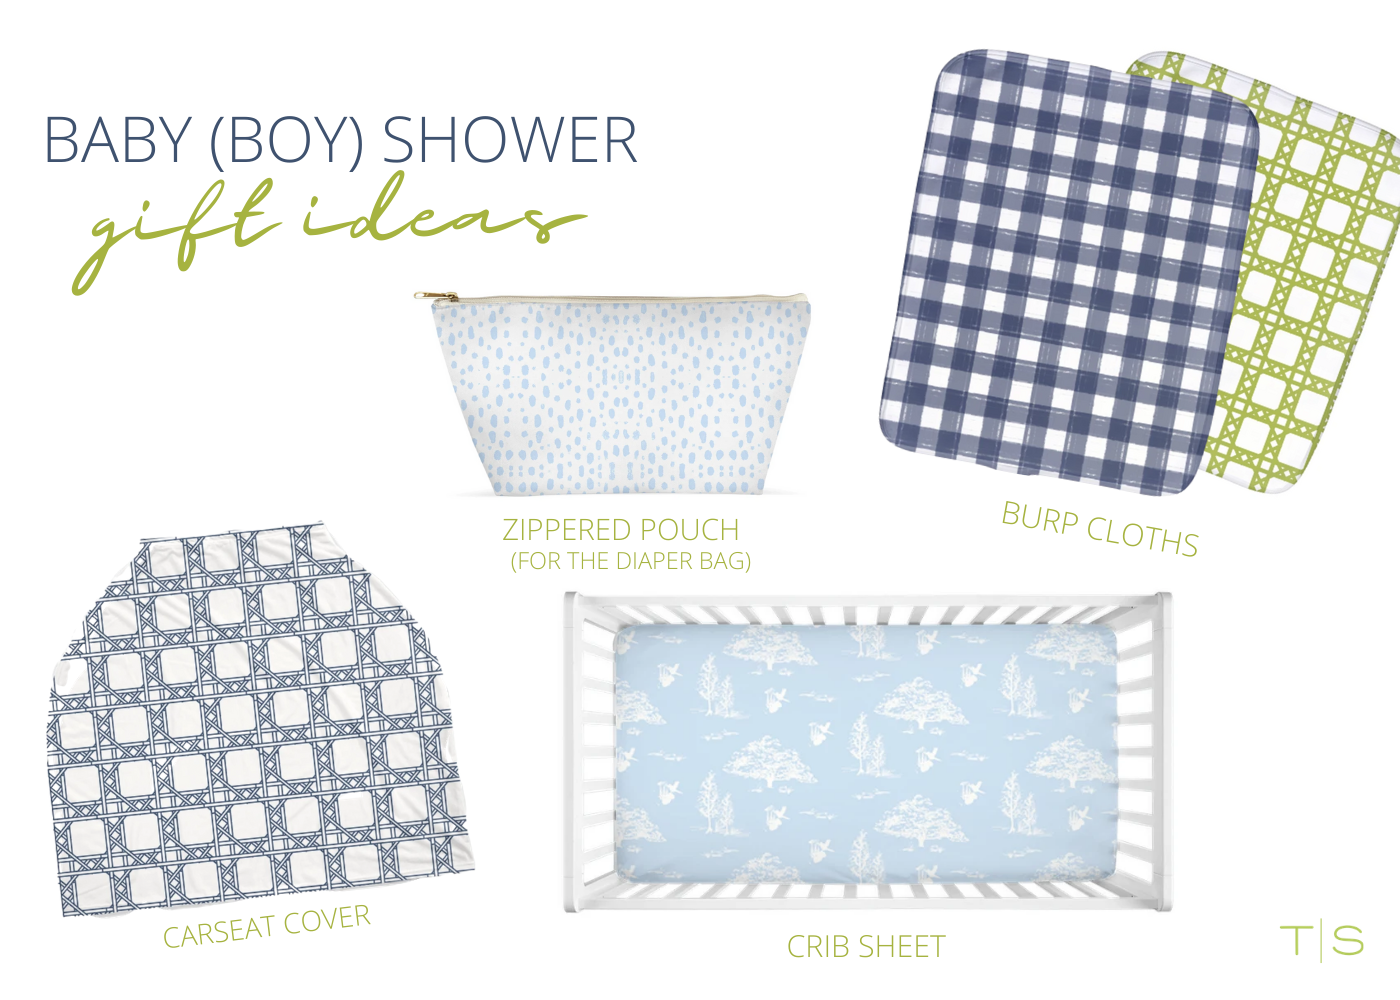 Baby (Boy) Shower Gift Ideas